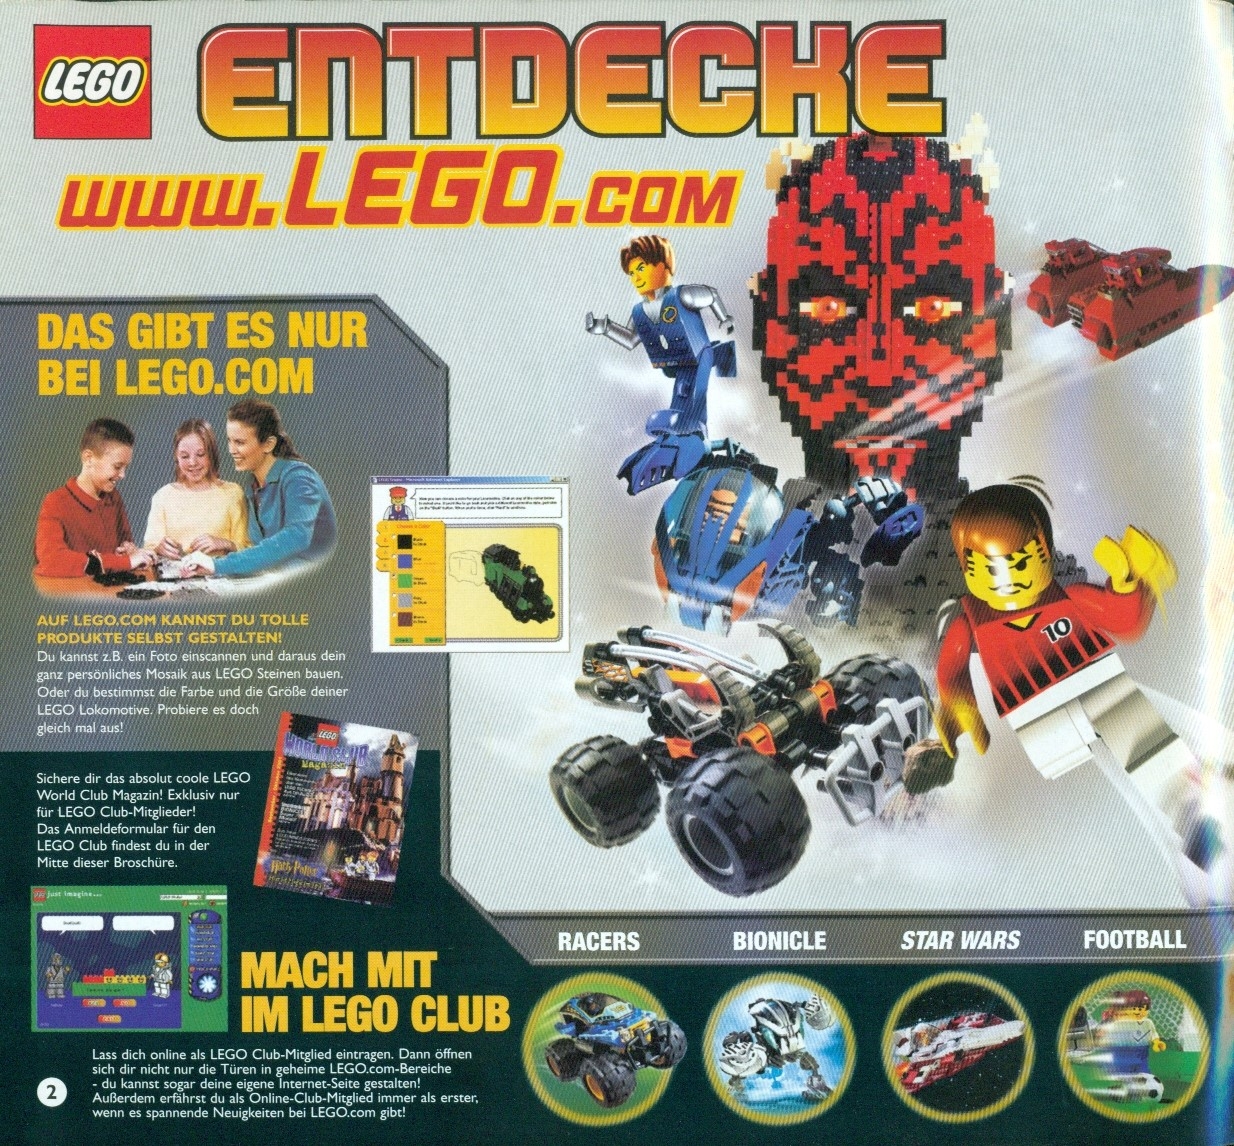 2002 LEGO Catalog 09 DE - LEGO instructions and catalogs